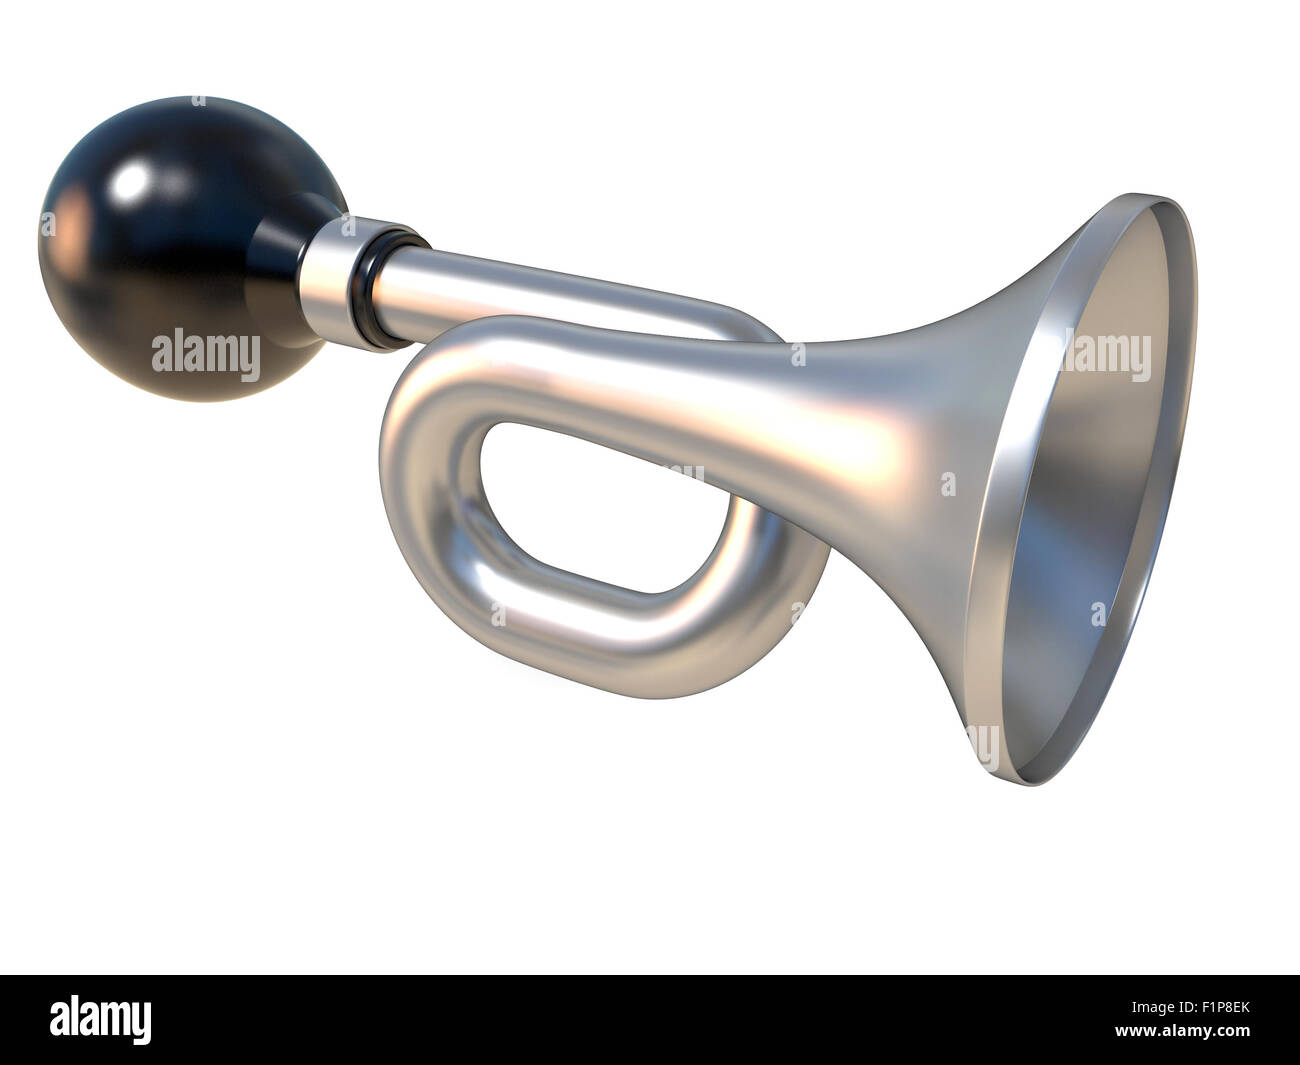 Vintage Drucklufthorn mit Gummiball. Klaxon. 3D-Render Abbildung isoliert auf weißem Hintergrund Stockfoto